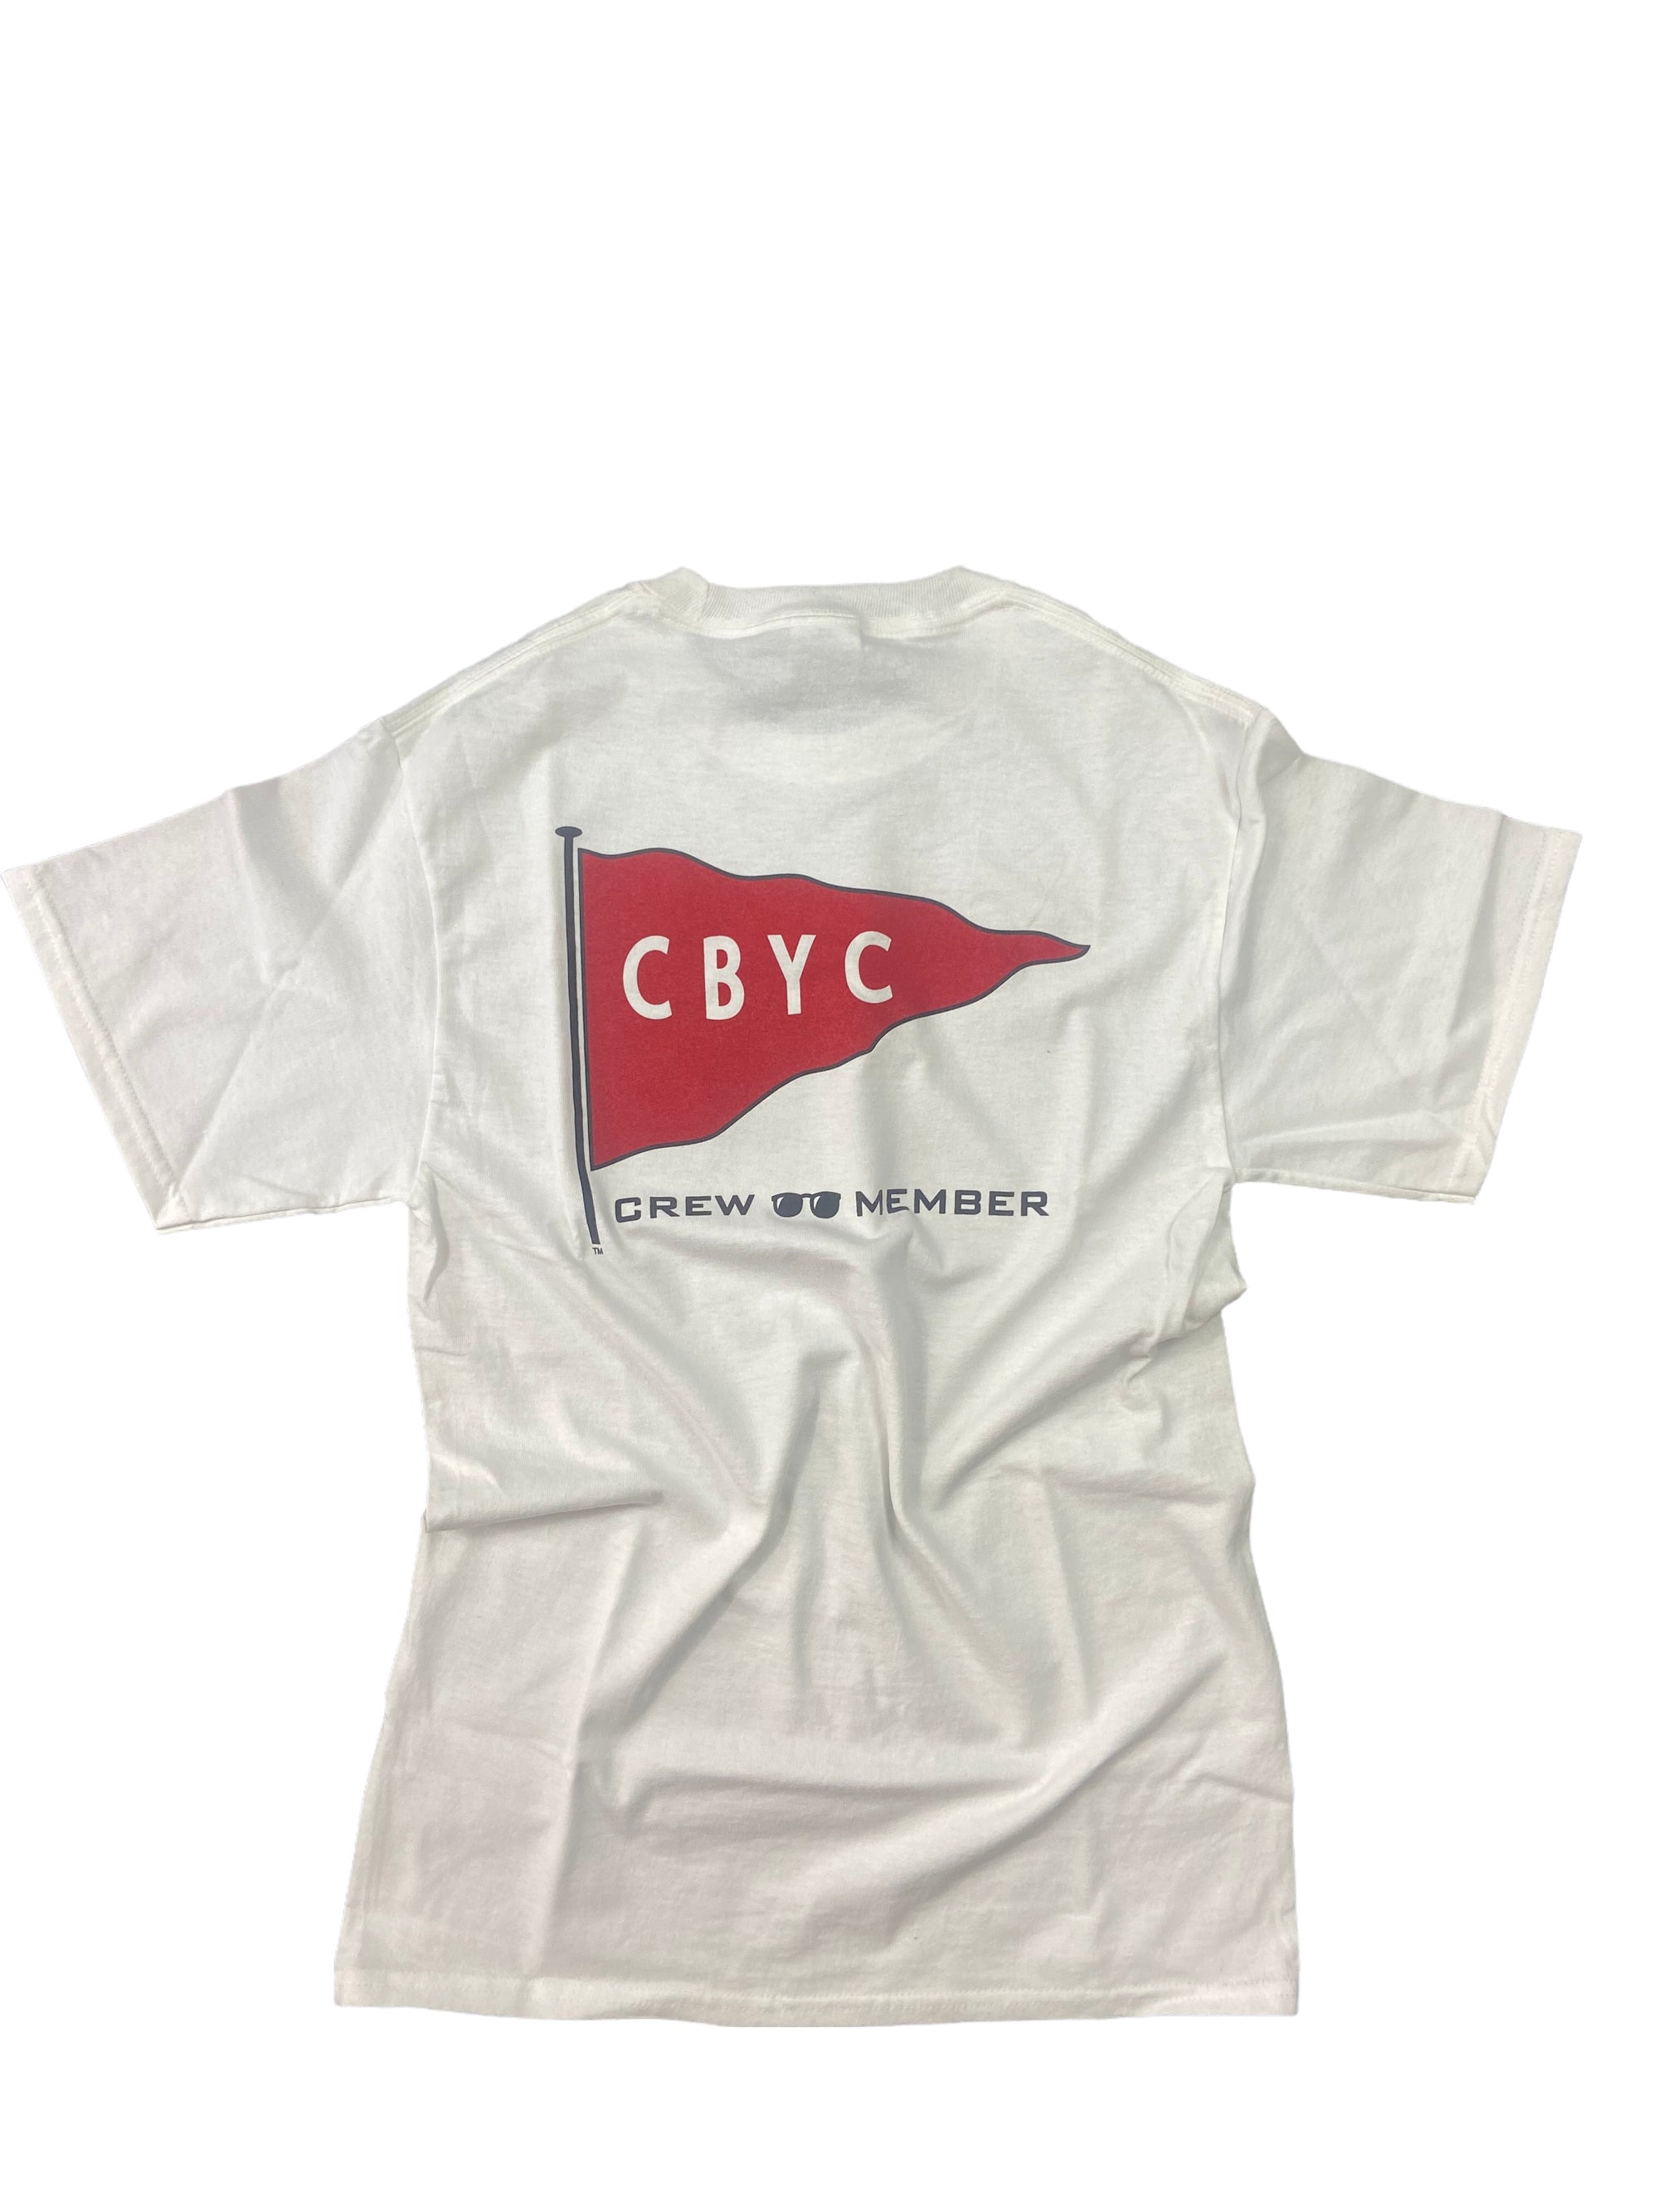 CBYC Crew T-Shirt